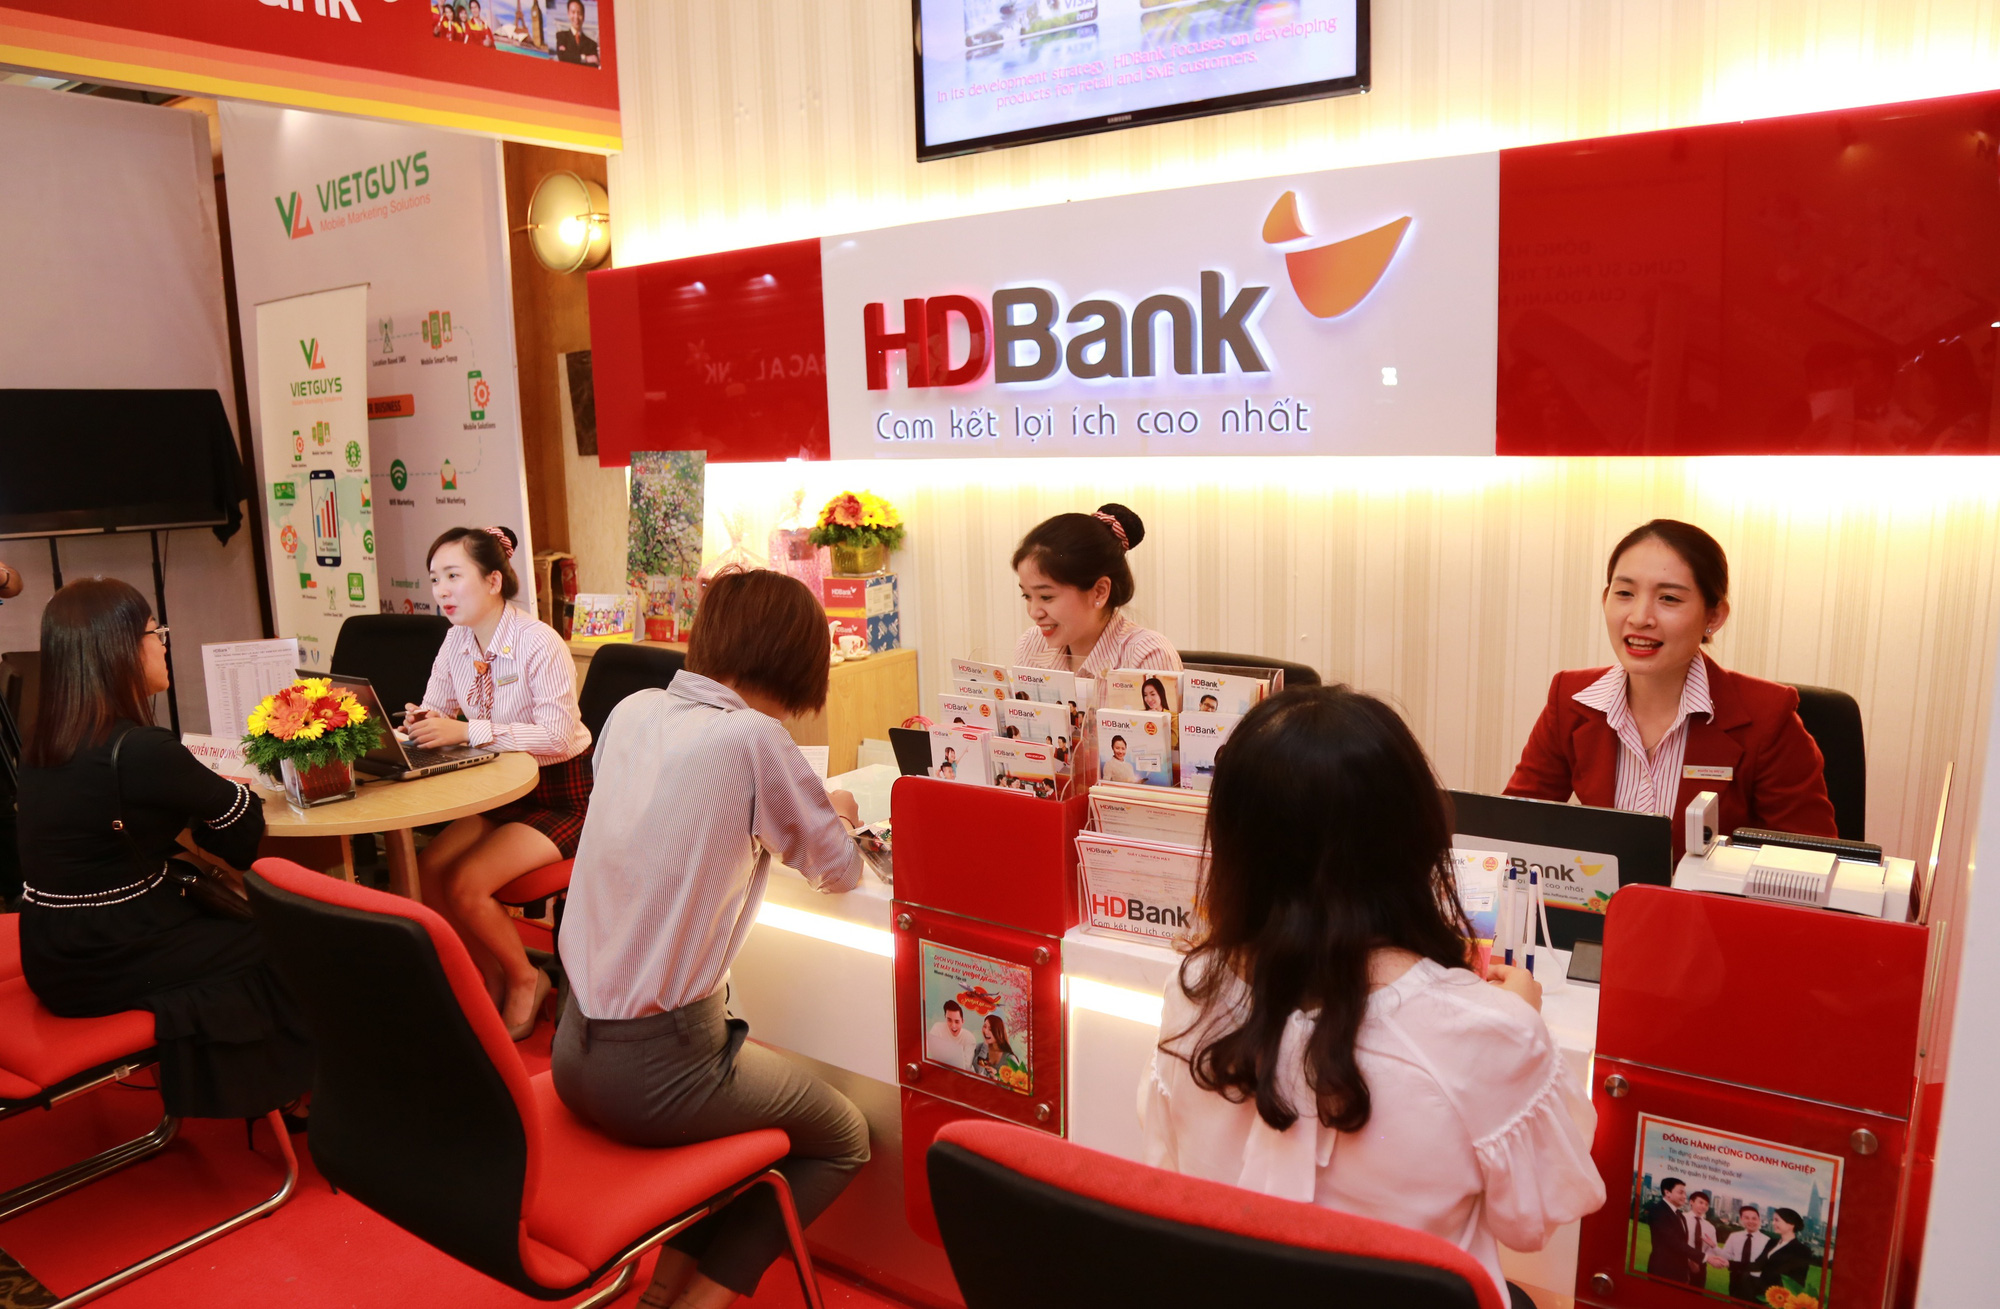 Cảnh sắc Việt Nam tươi đẹp trên bộ lịch ngân hàng HDBank